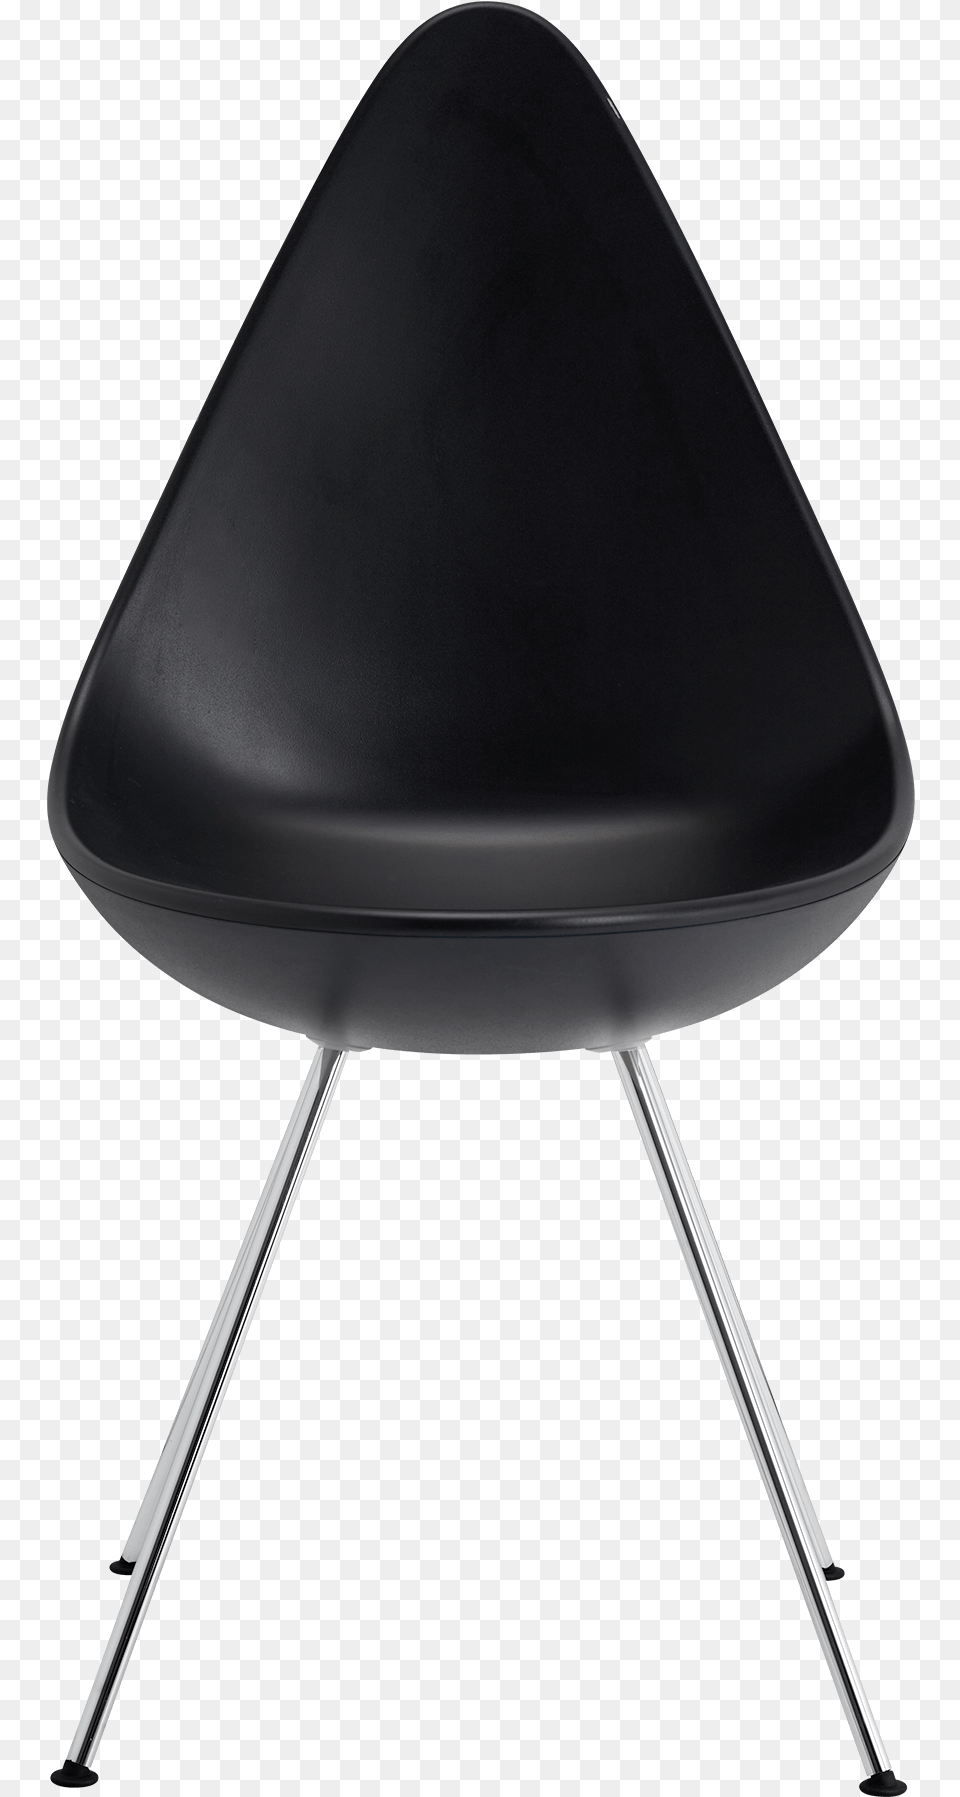 The Drop Chair Arne Jacobsen Black Monochrome Base Arne Jacobsen Drop Chair, Cushion, Furniture, Home Decor Free Transparent Png